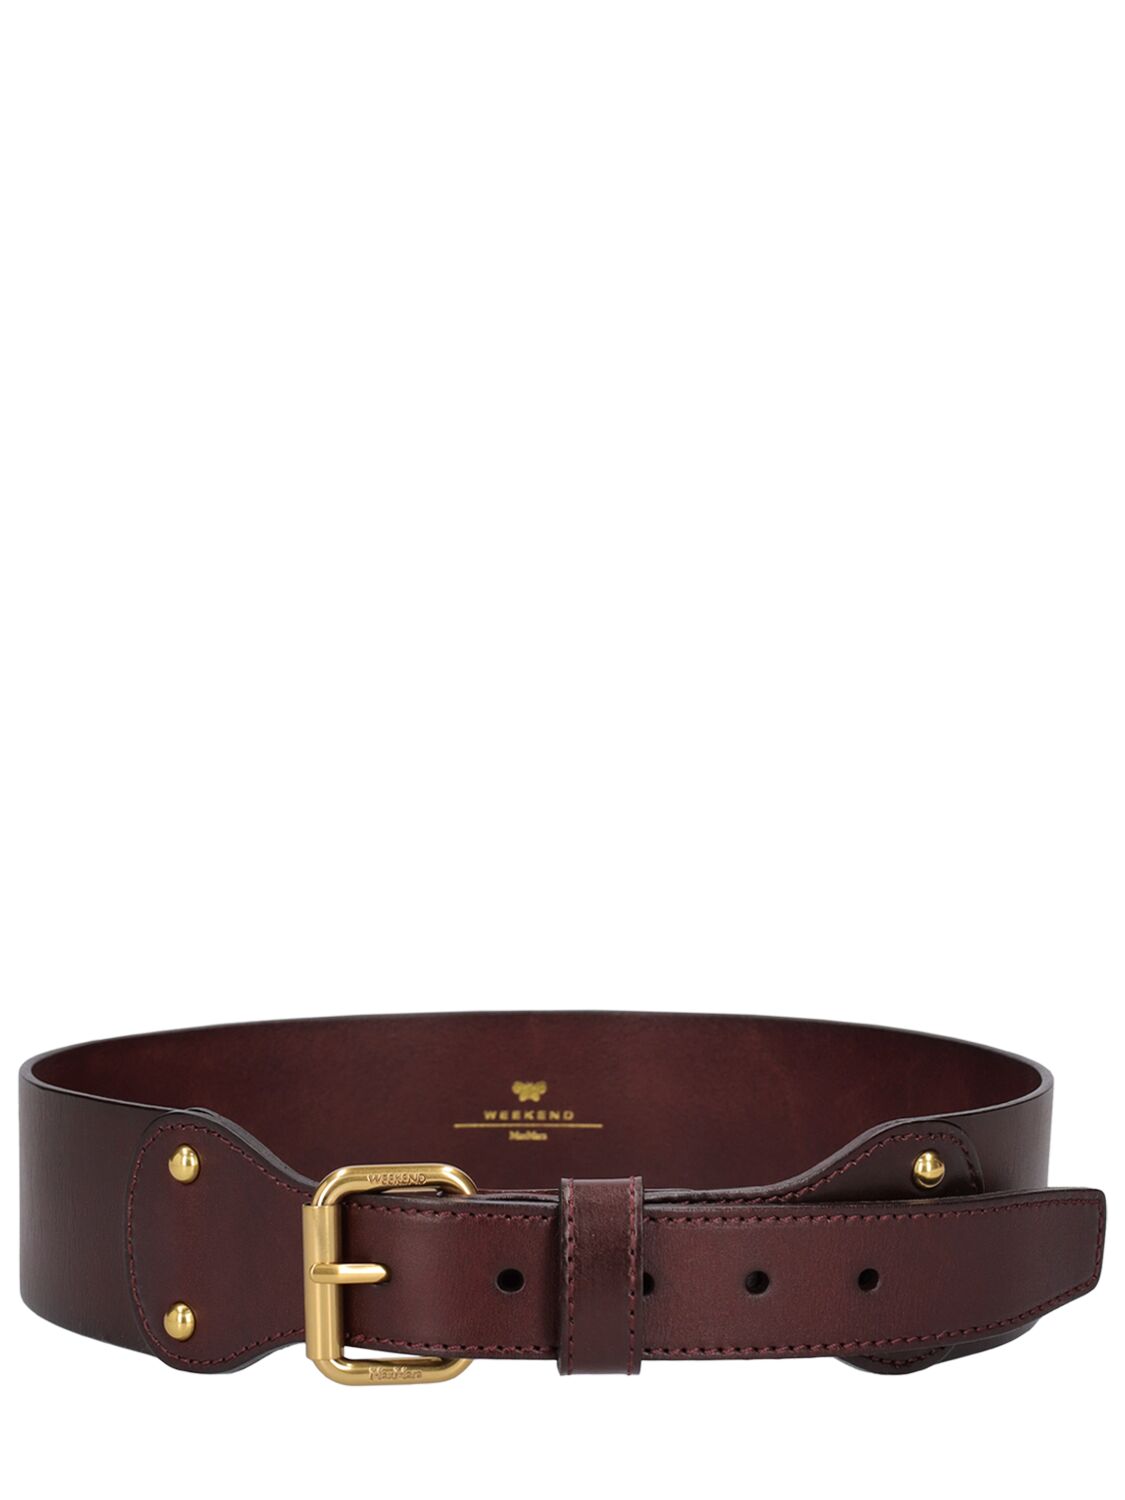 Weekend Max Mara 5.5 Cm Corone Leather Belt In Dark Brown